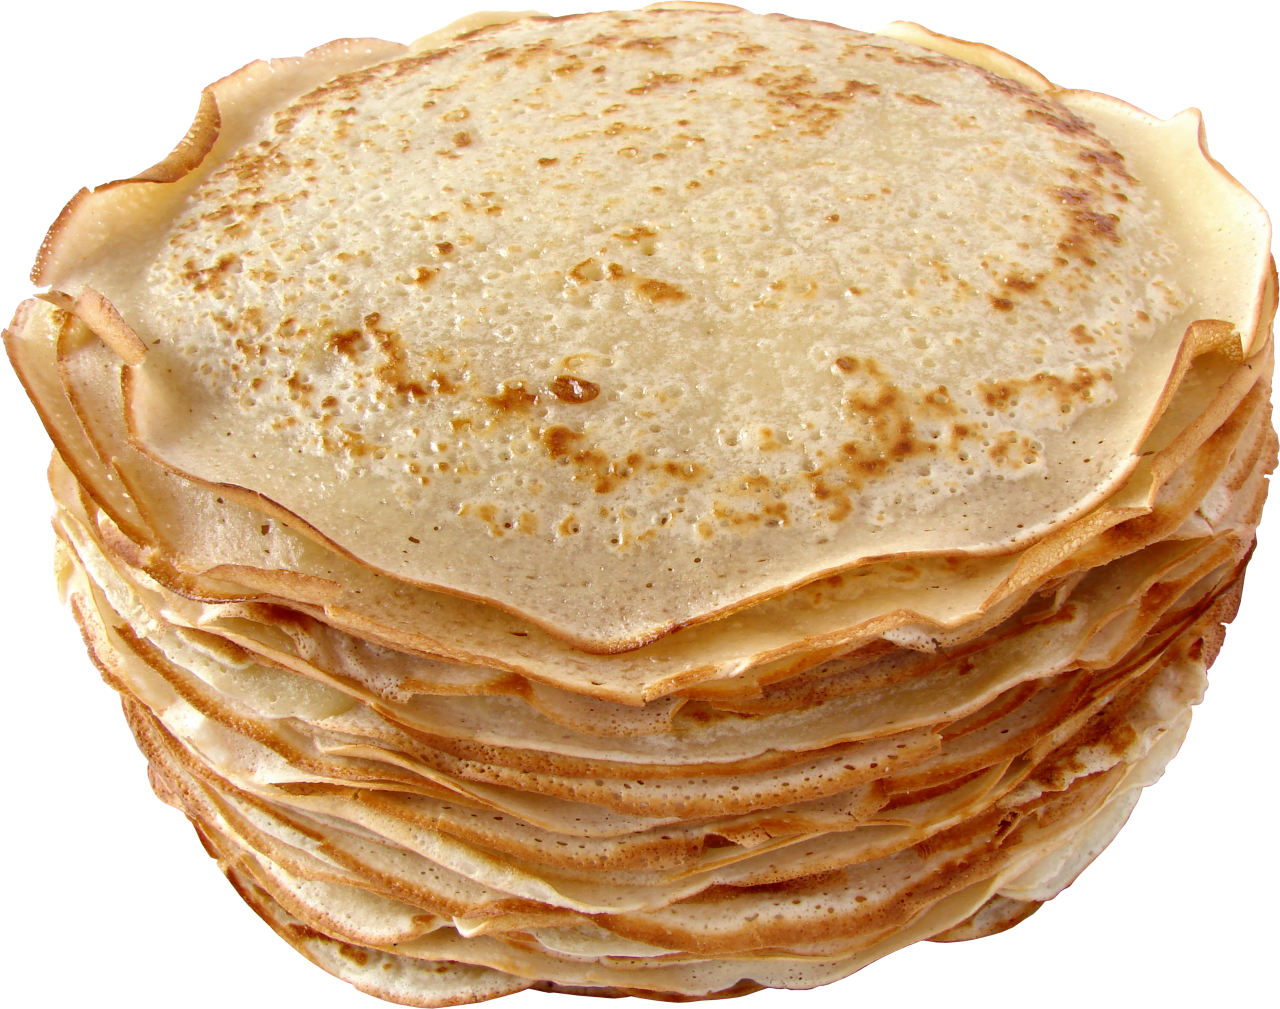 Pancake PNG Image - PurePNG | Free transparent CC0 PNG Image Library